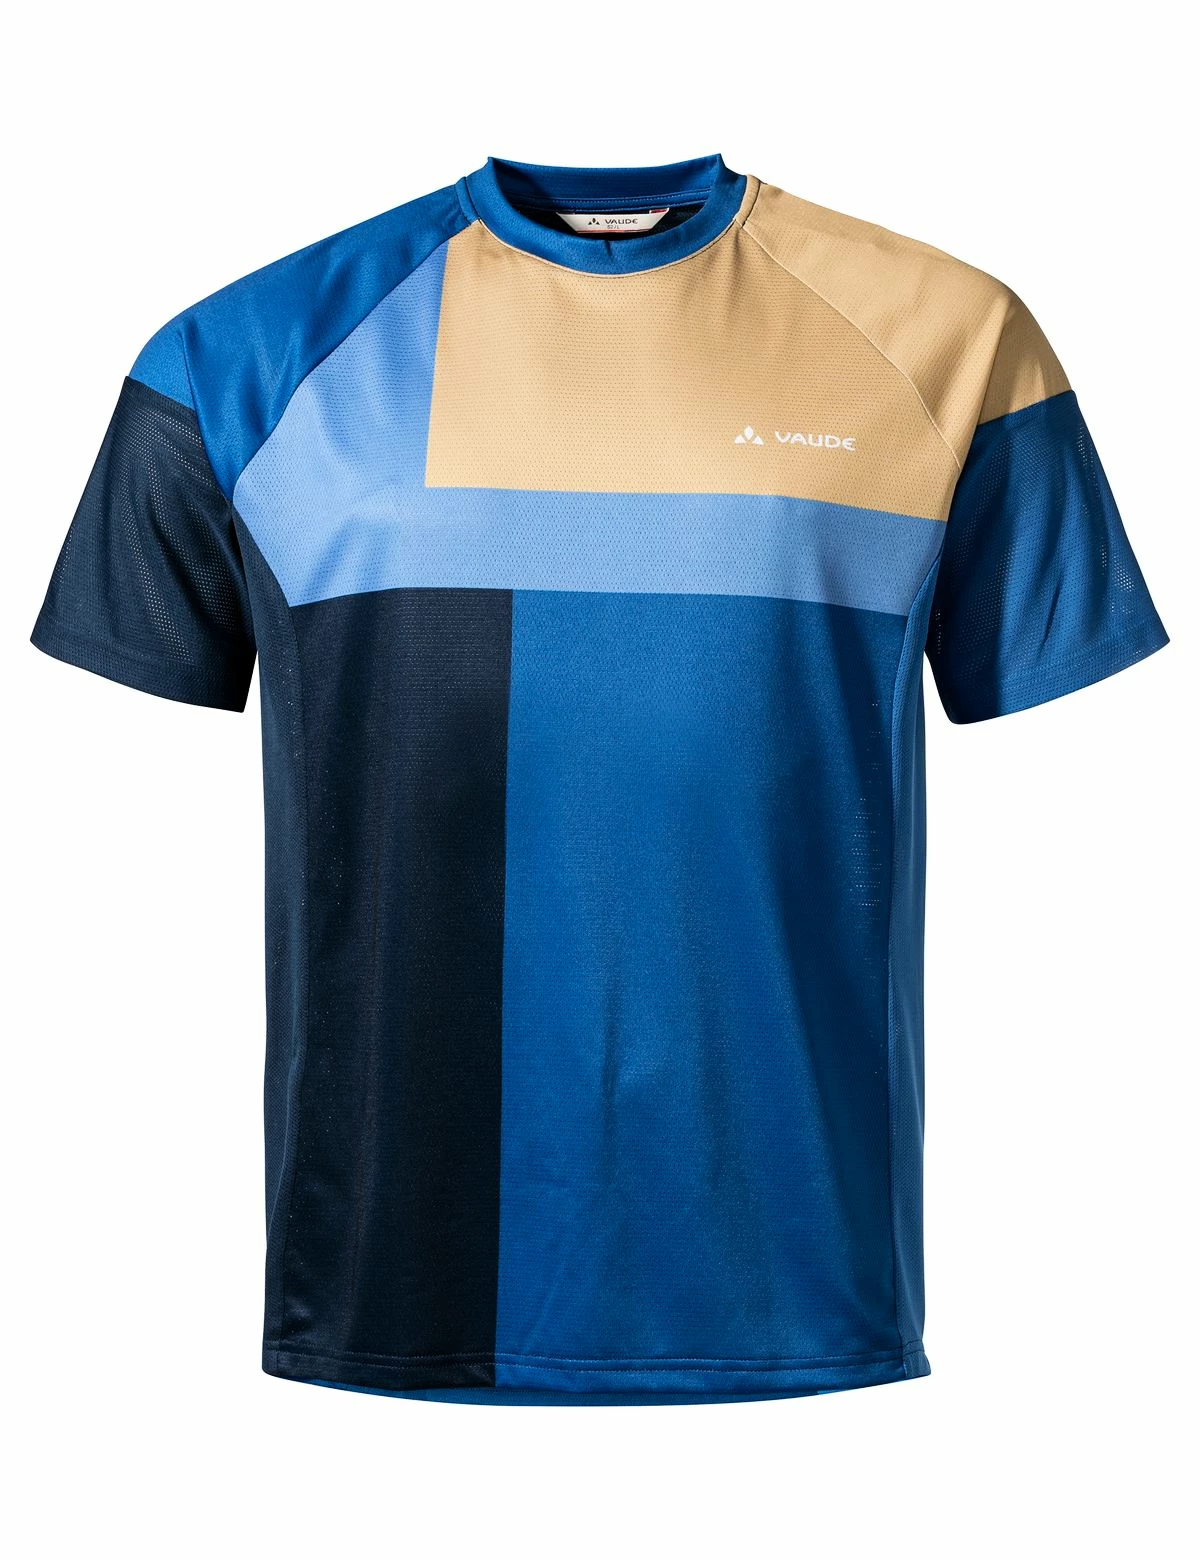 Men's cycling jersey VAUDE Moab VI Shirt Desert M